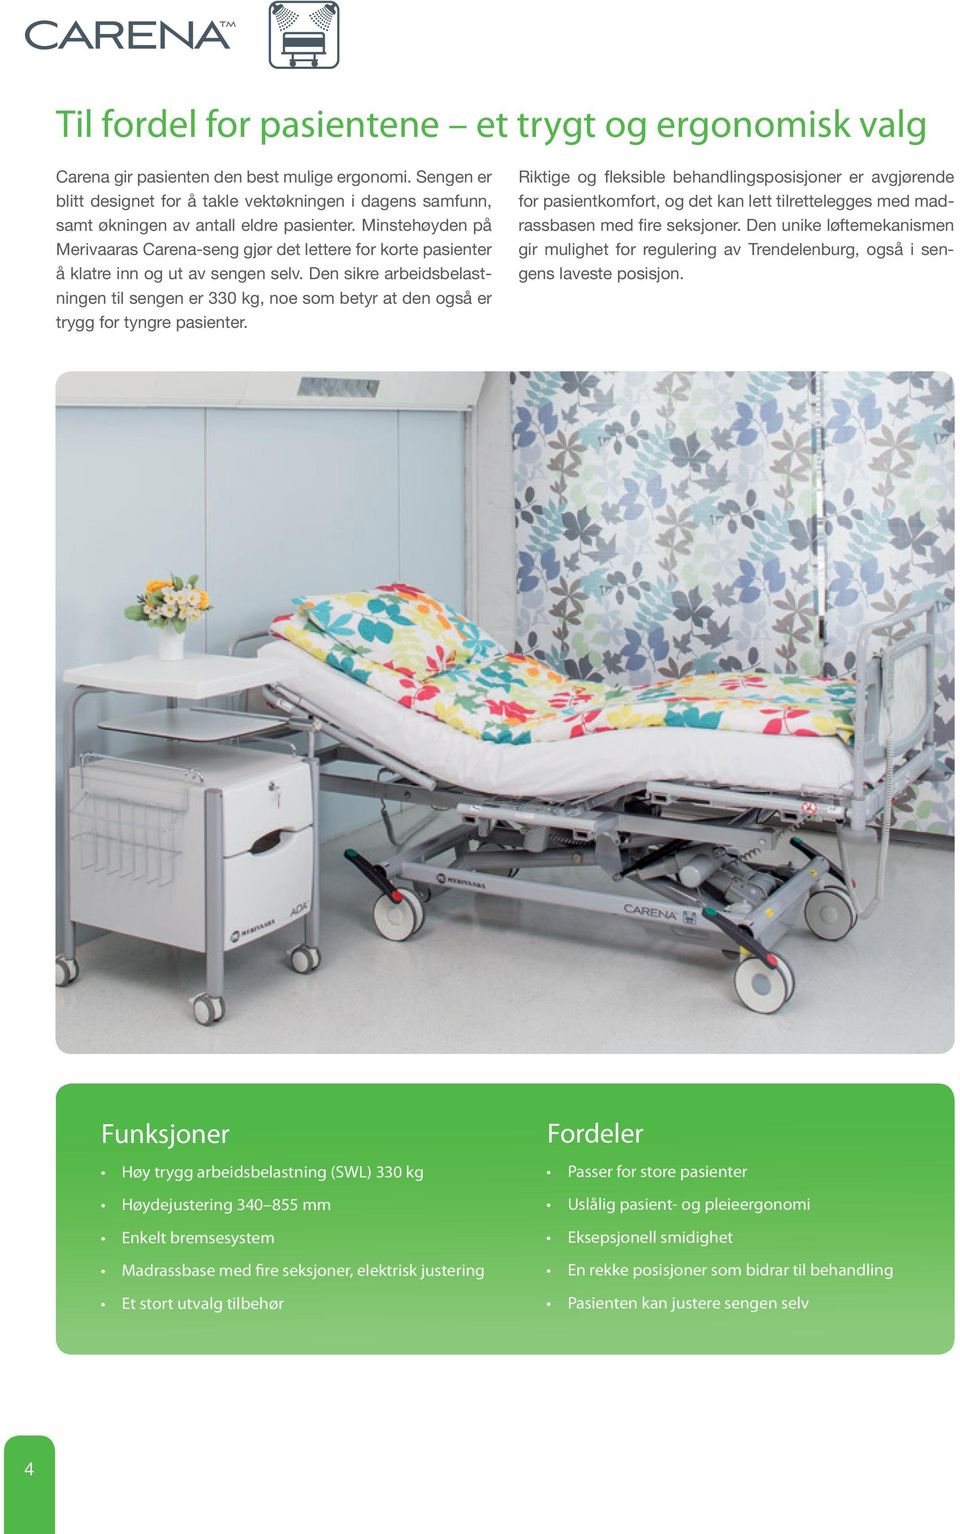 Minstehøyden på Merivaaras Carena-seng gjør det lettere for korte pasienter å klatre inn og ut av sengen selv.